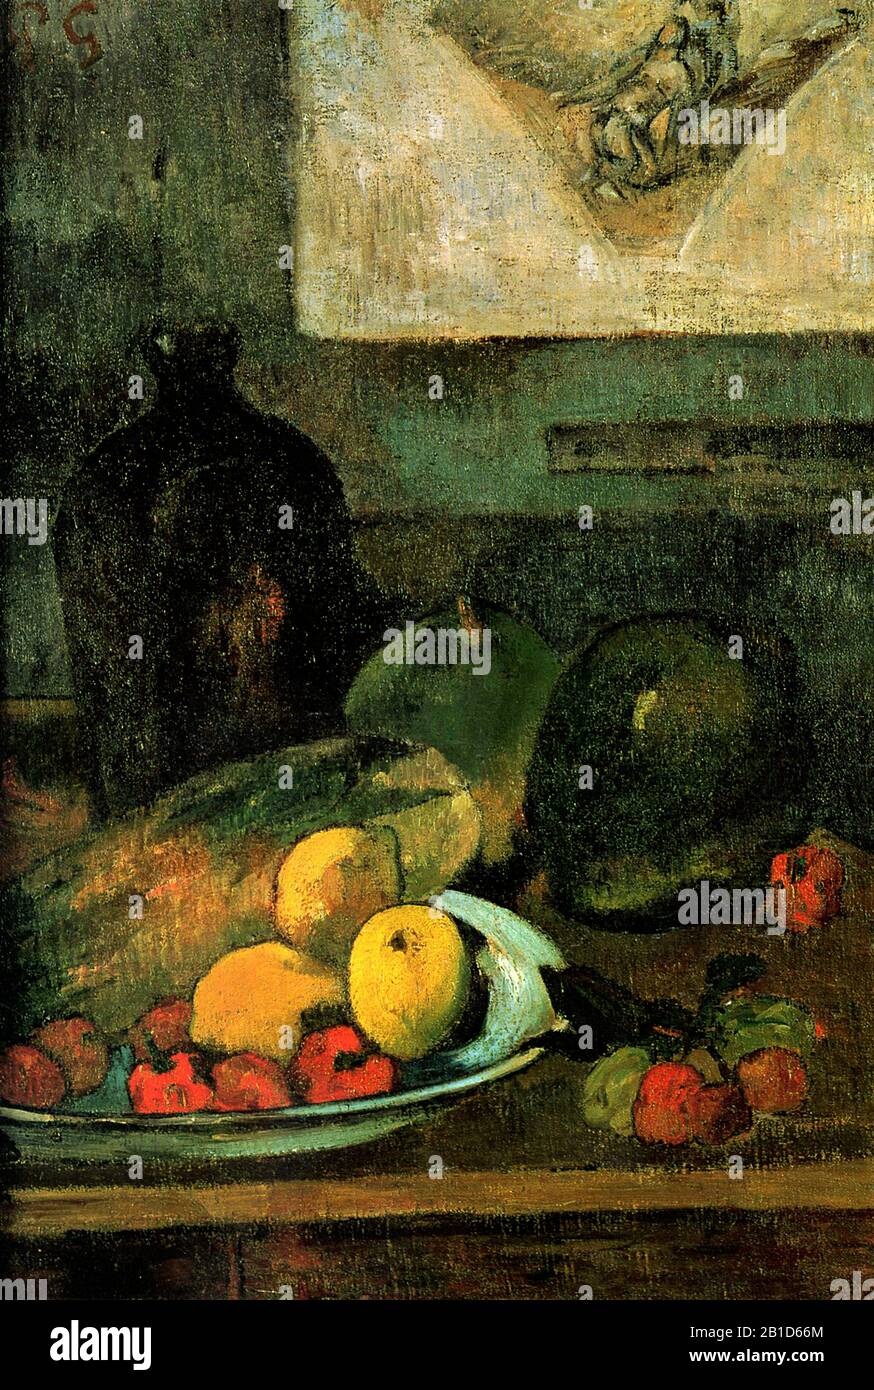 La vie encore devant une gravure de Delacroix (1895) 19ème siècle Peinture de Paul Gauguin - Très haute résolution et image de qualité Banque D'Images